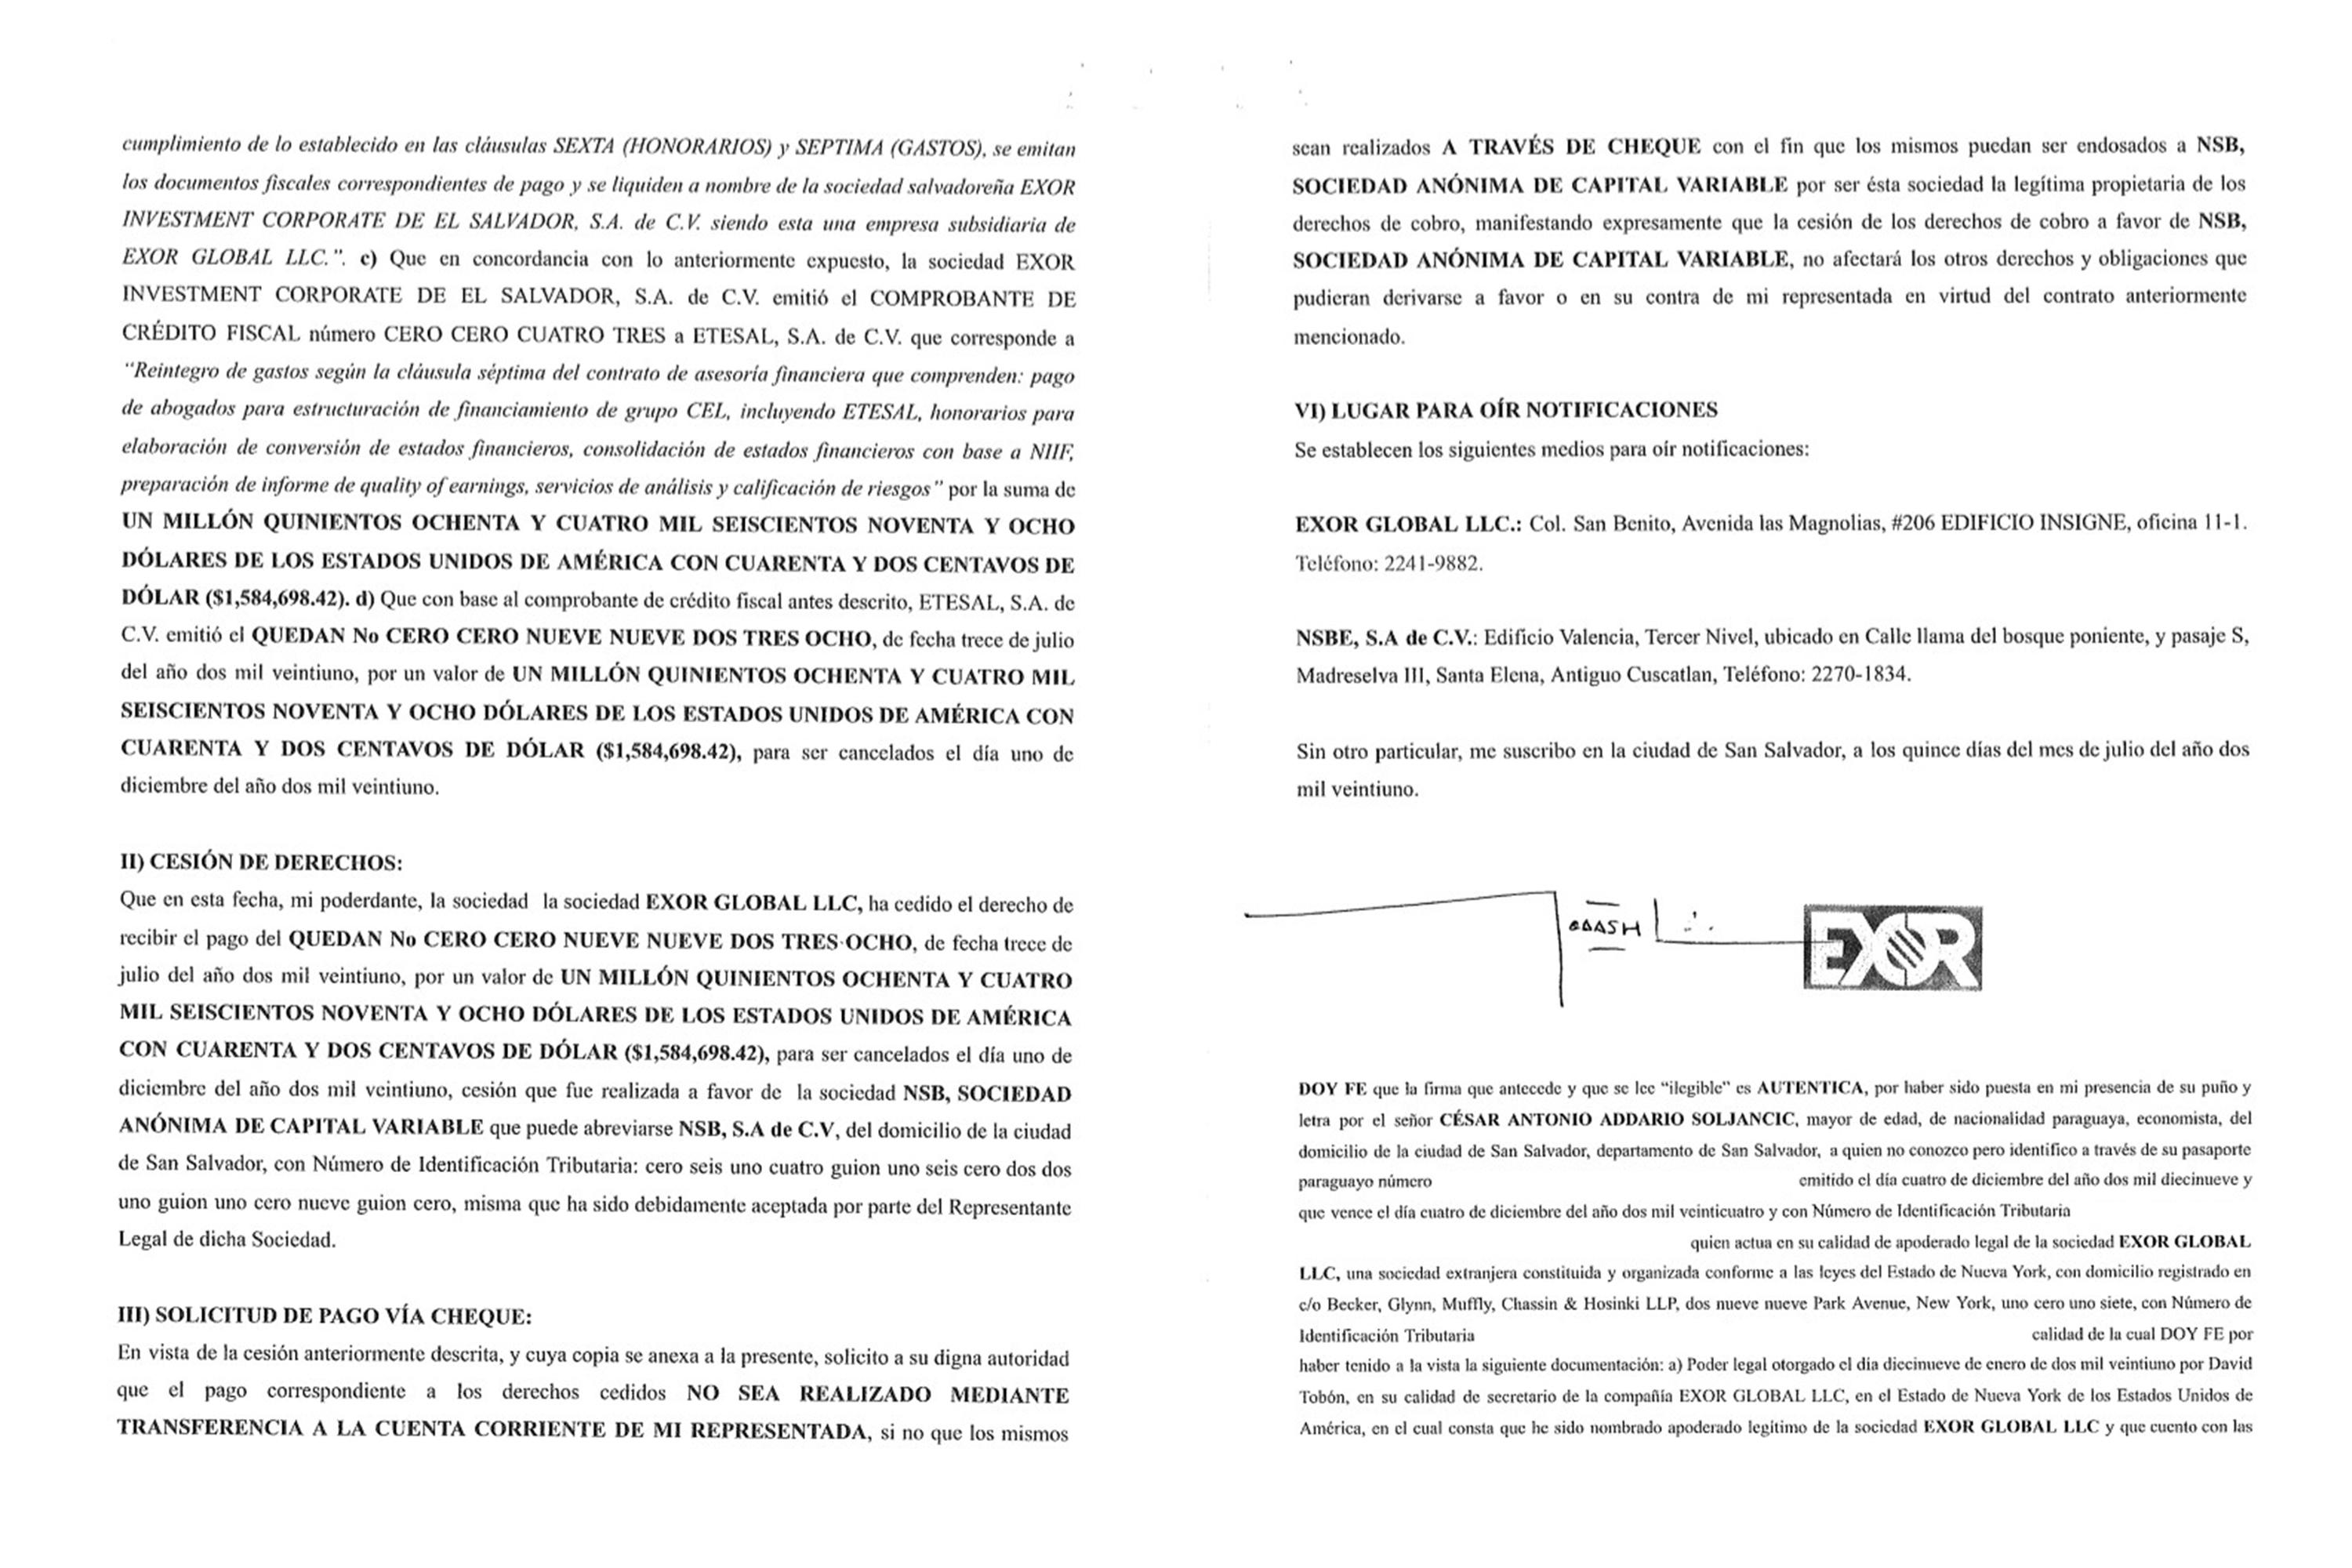 Este documento de cesión de cobro, de Etesal,  refleja el monto de pago por  $1.5 millones a la empresa de Addario. Este documento, que refleja una transacción comercial de factoraje, dice que Exor cedió el cobro a NSB, la principal contratista de alimentos del Gobierno.